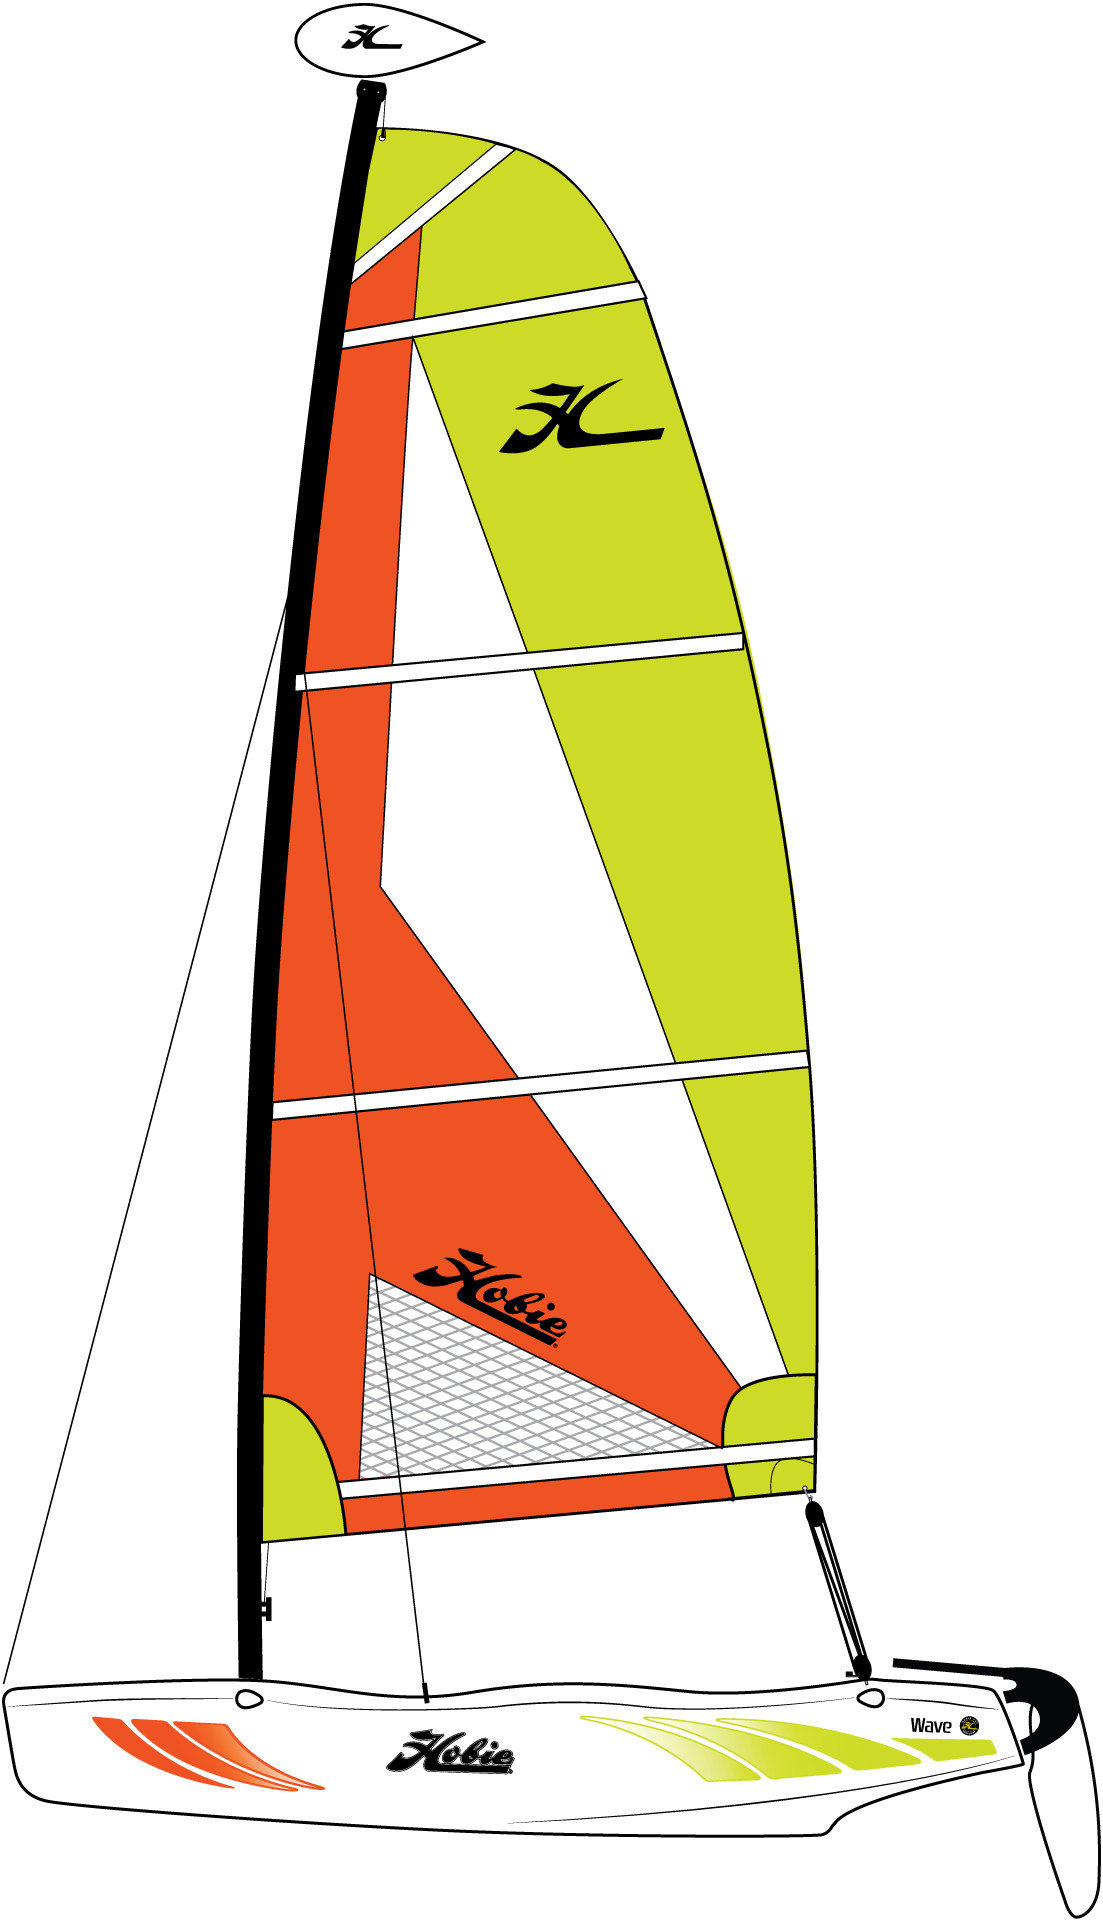 clipart waves sailboat